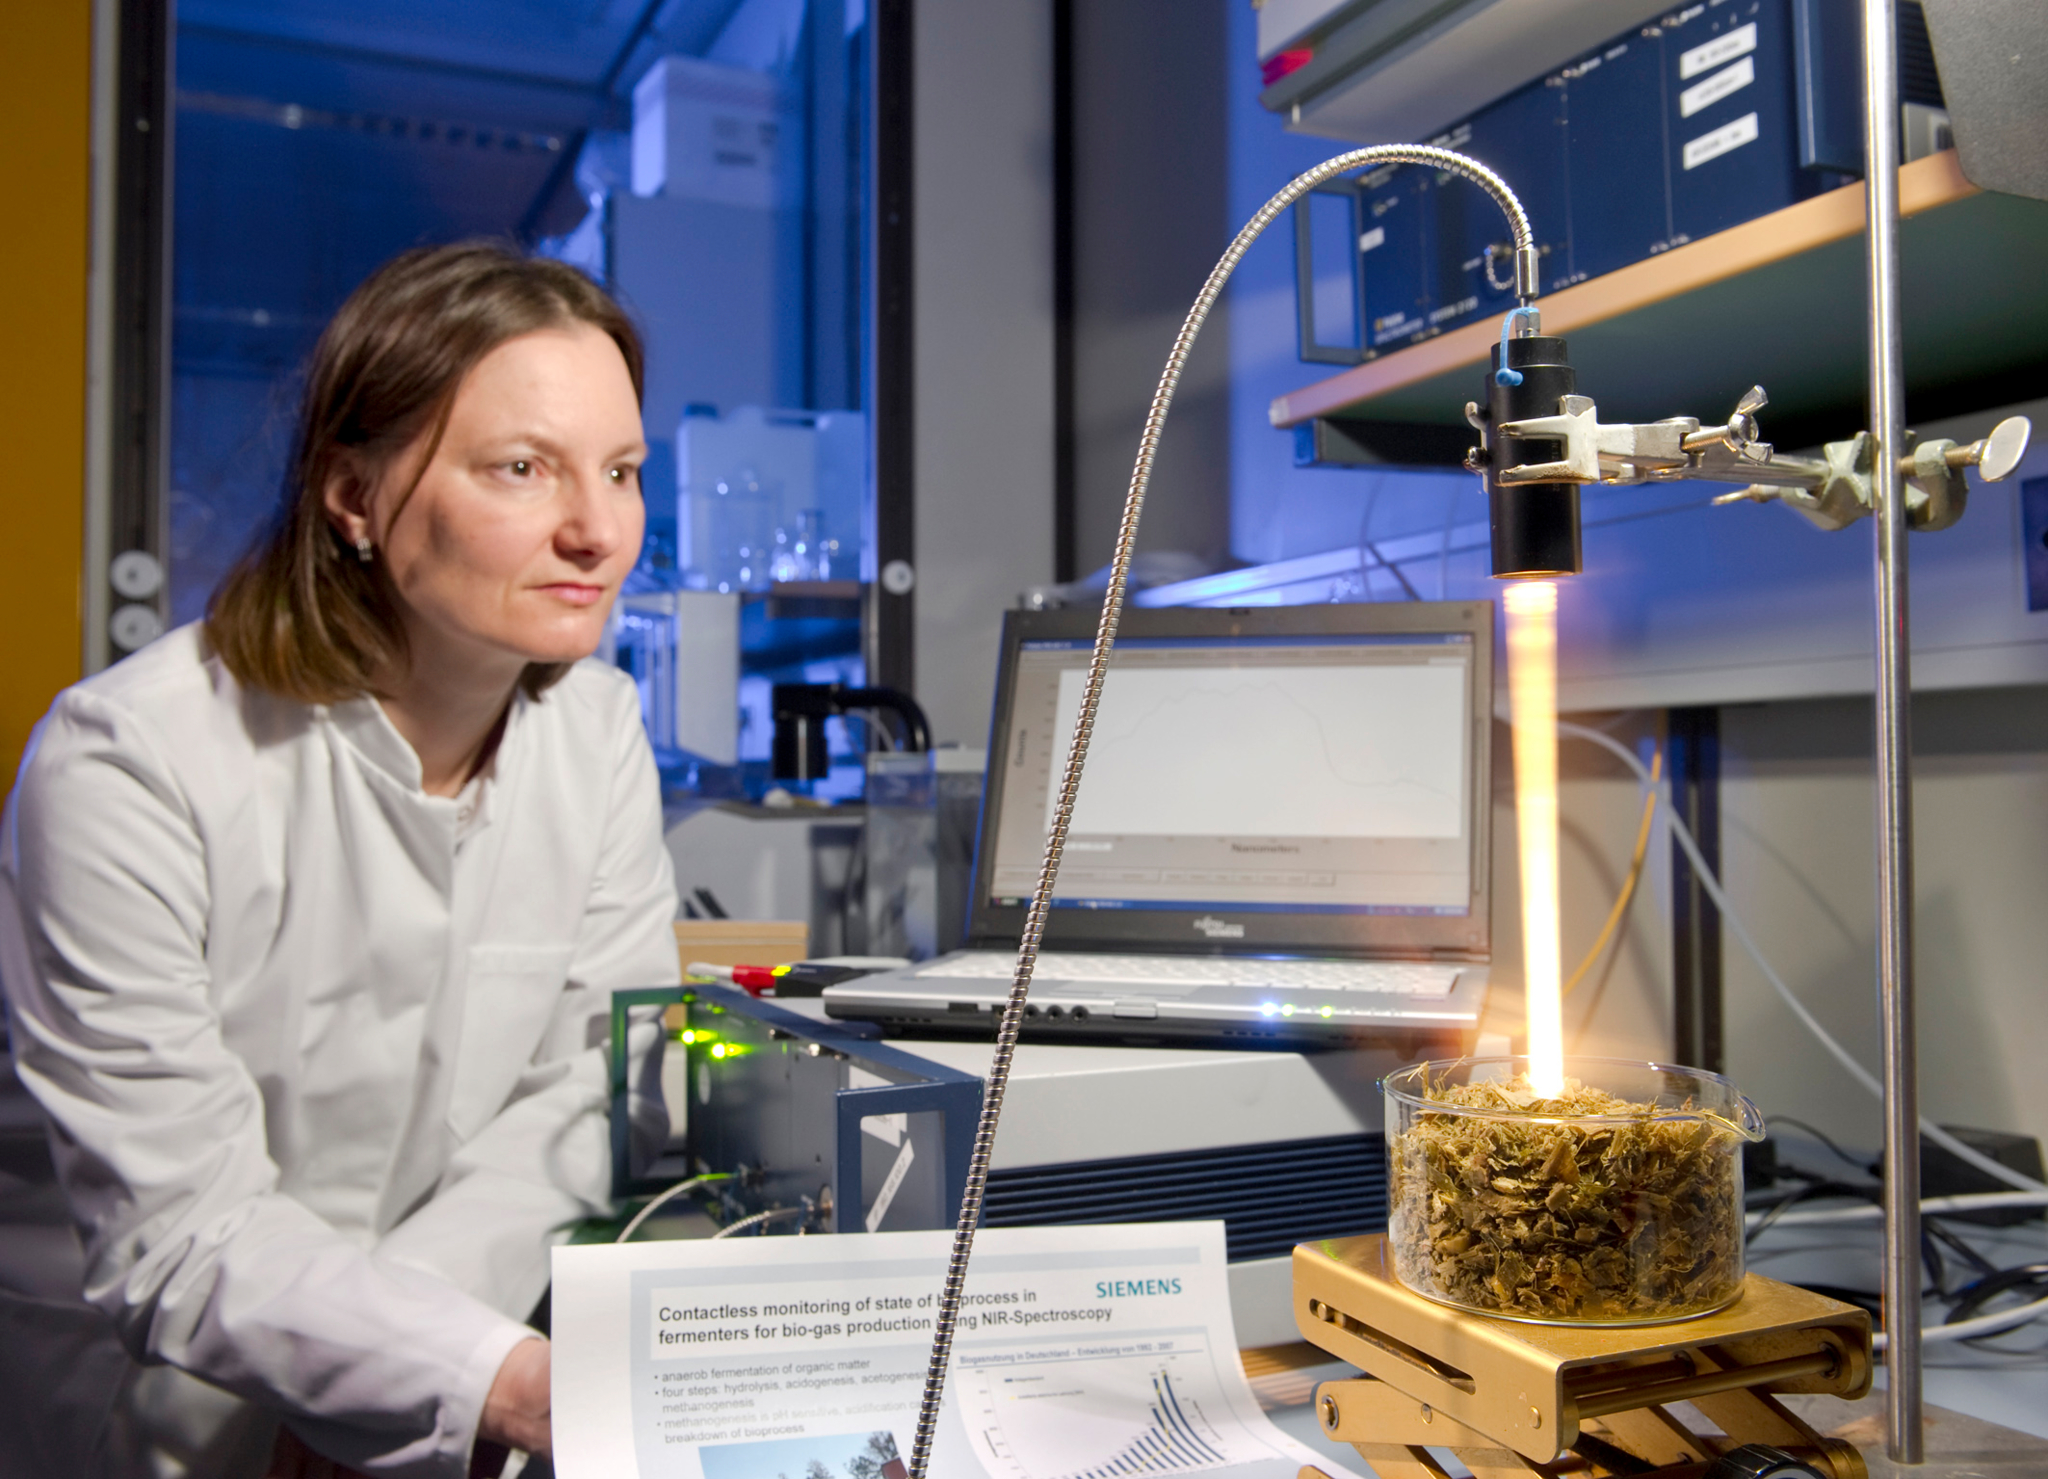 Auf der linken Seite sieht man eine Frau im Laborkittel in einem Labor. Rechts steht ein Laptop und davor ein Becherglas mit Biomasse, welches mit Licht angestrahlt wird.